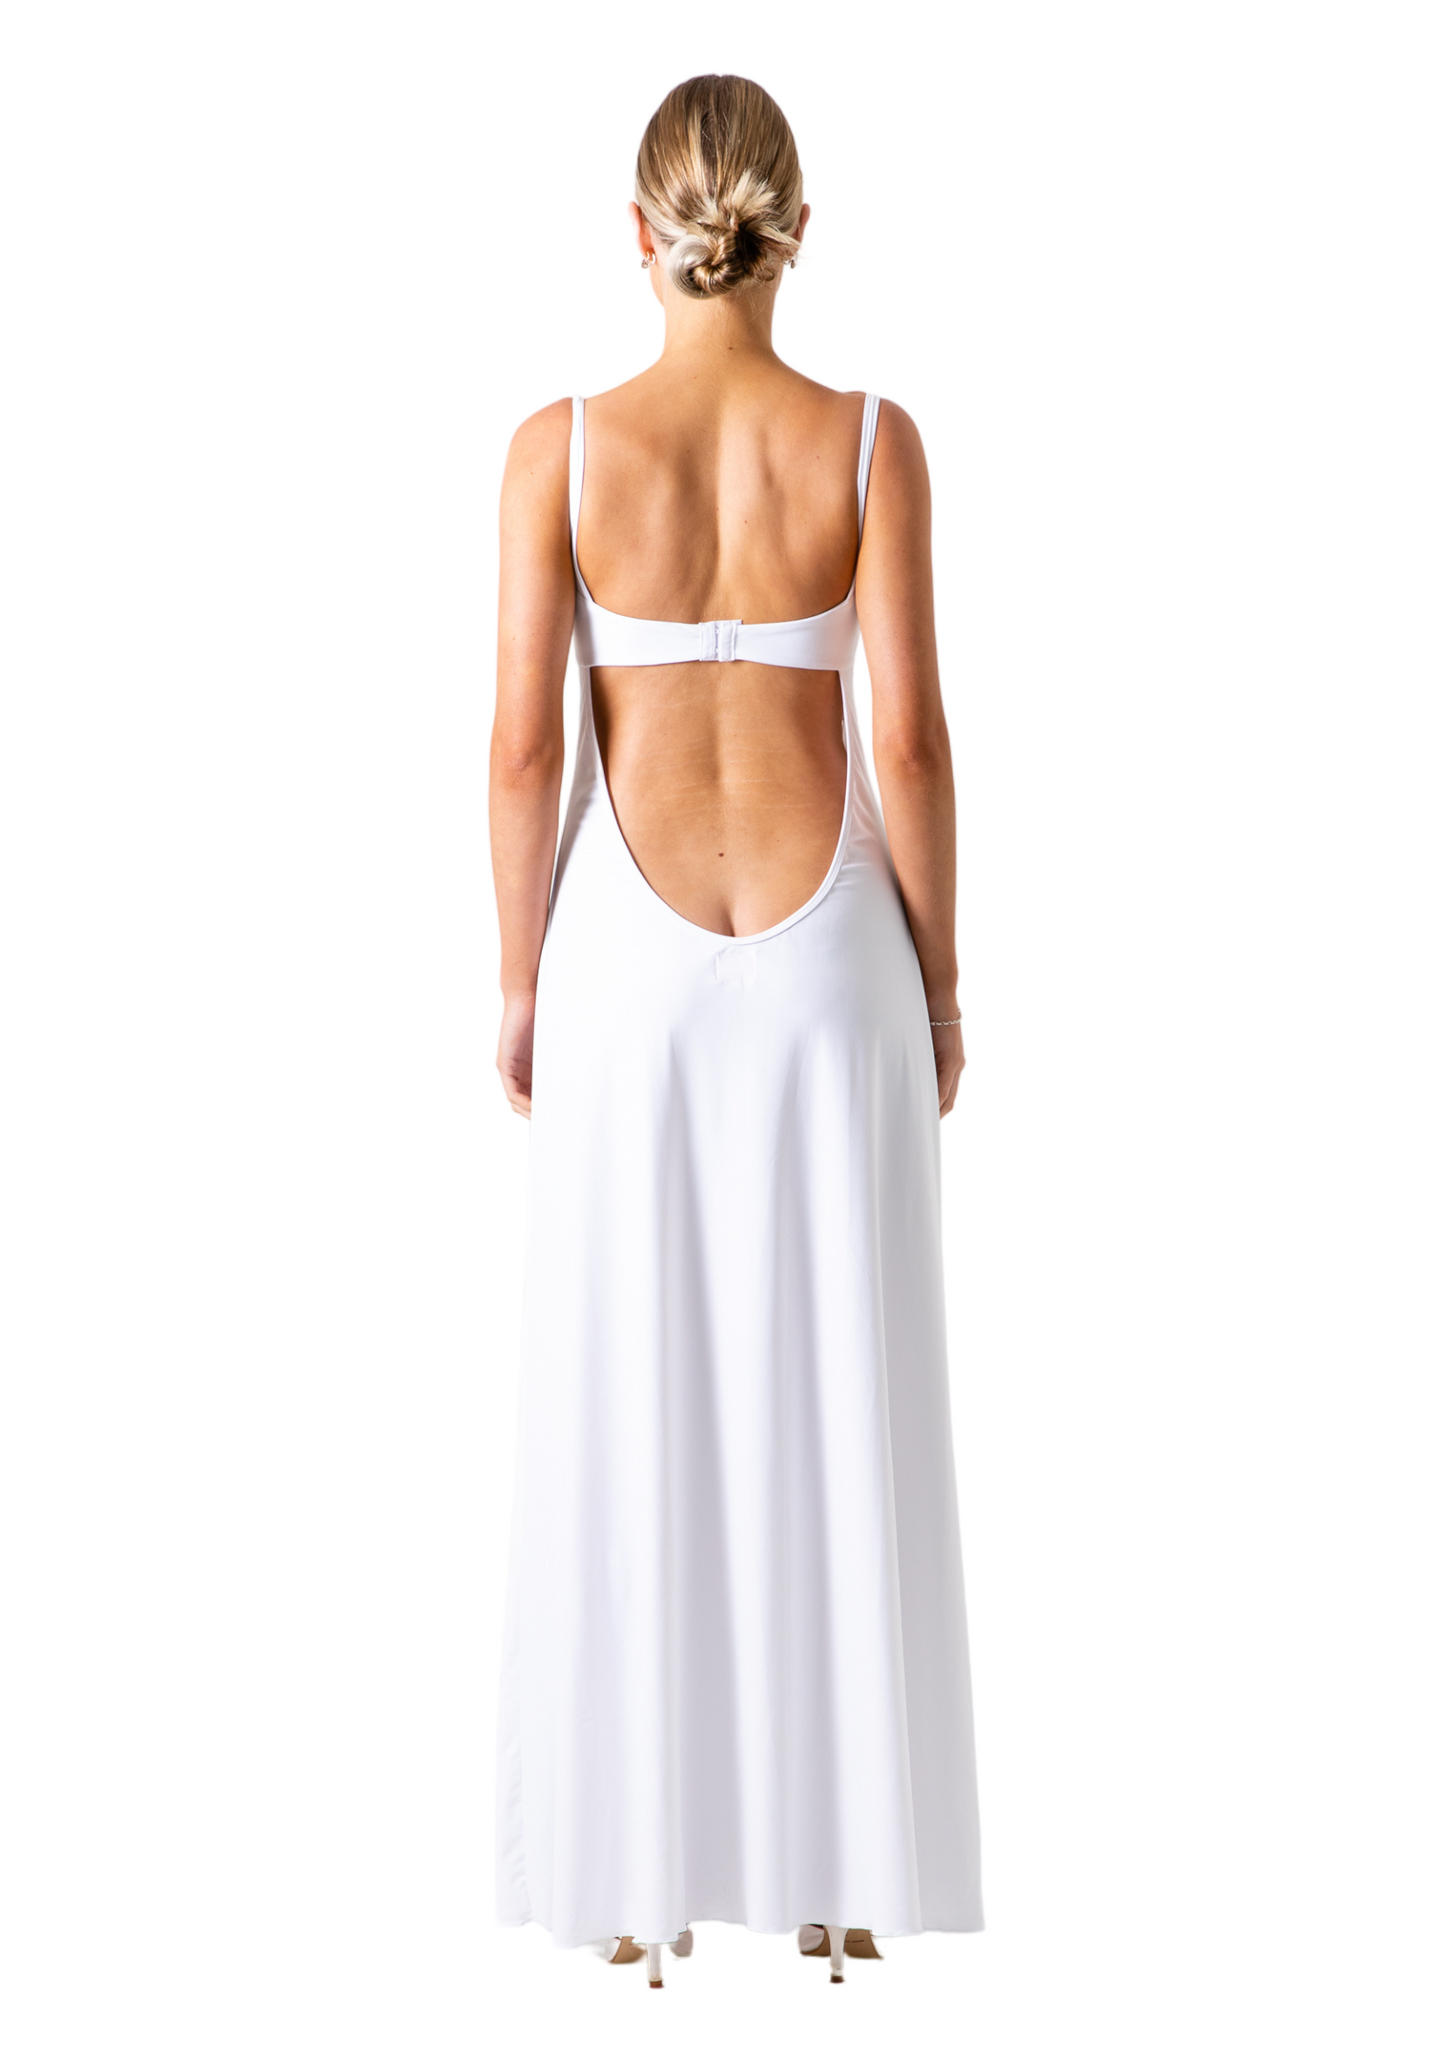 PATRYCJA DRESS - WHITE